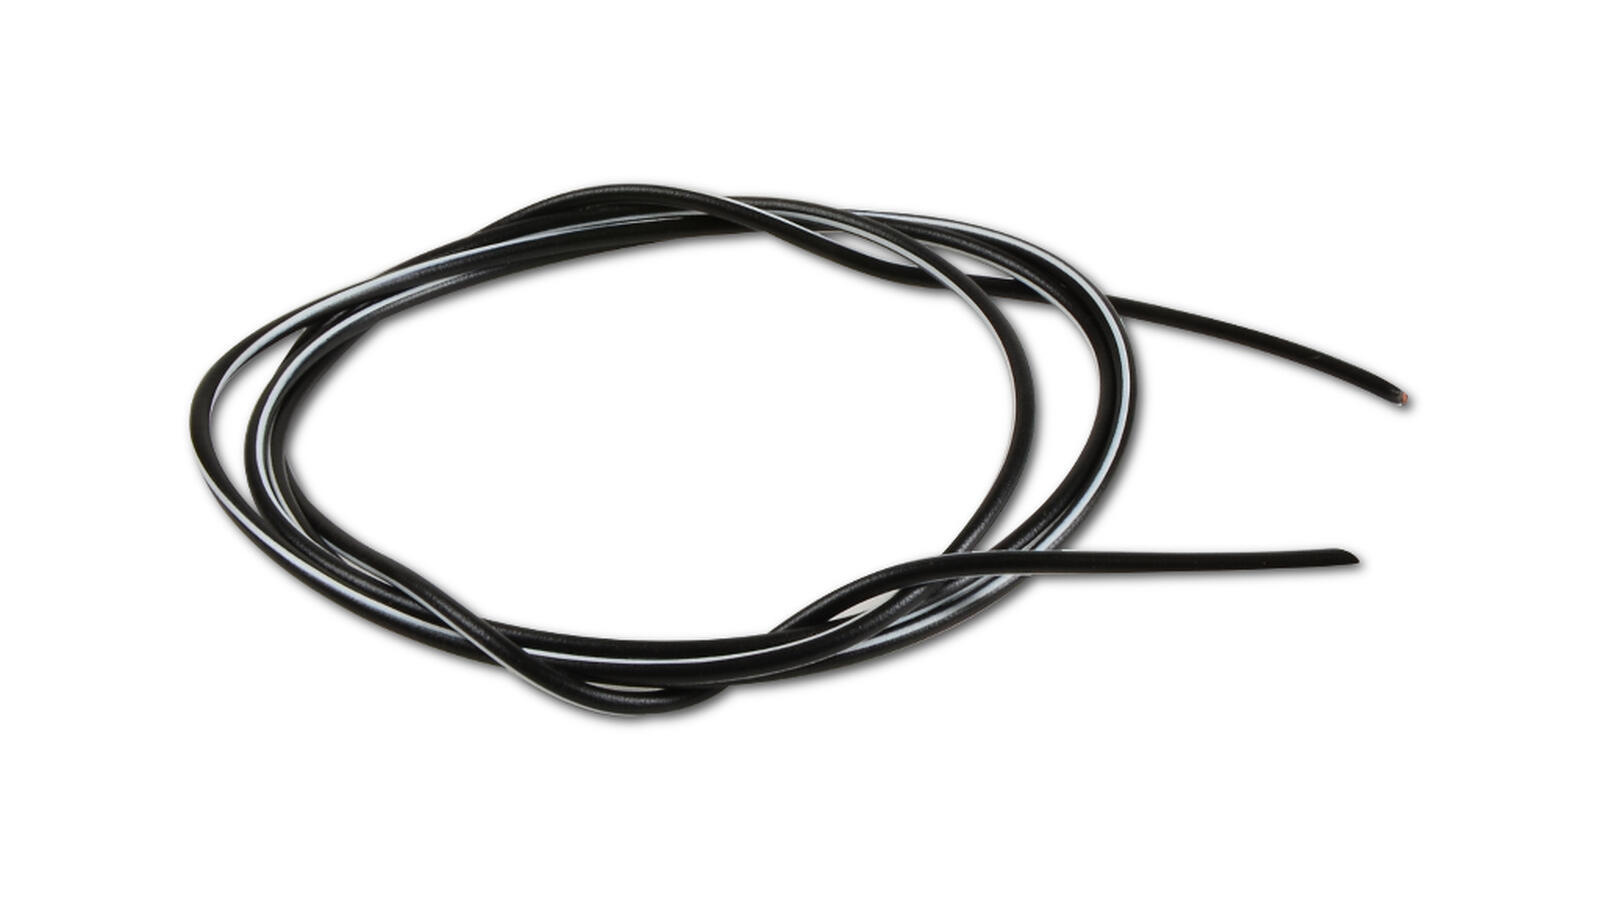 Kabel 1,5mm² 1m schwarz weiß, 0,99